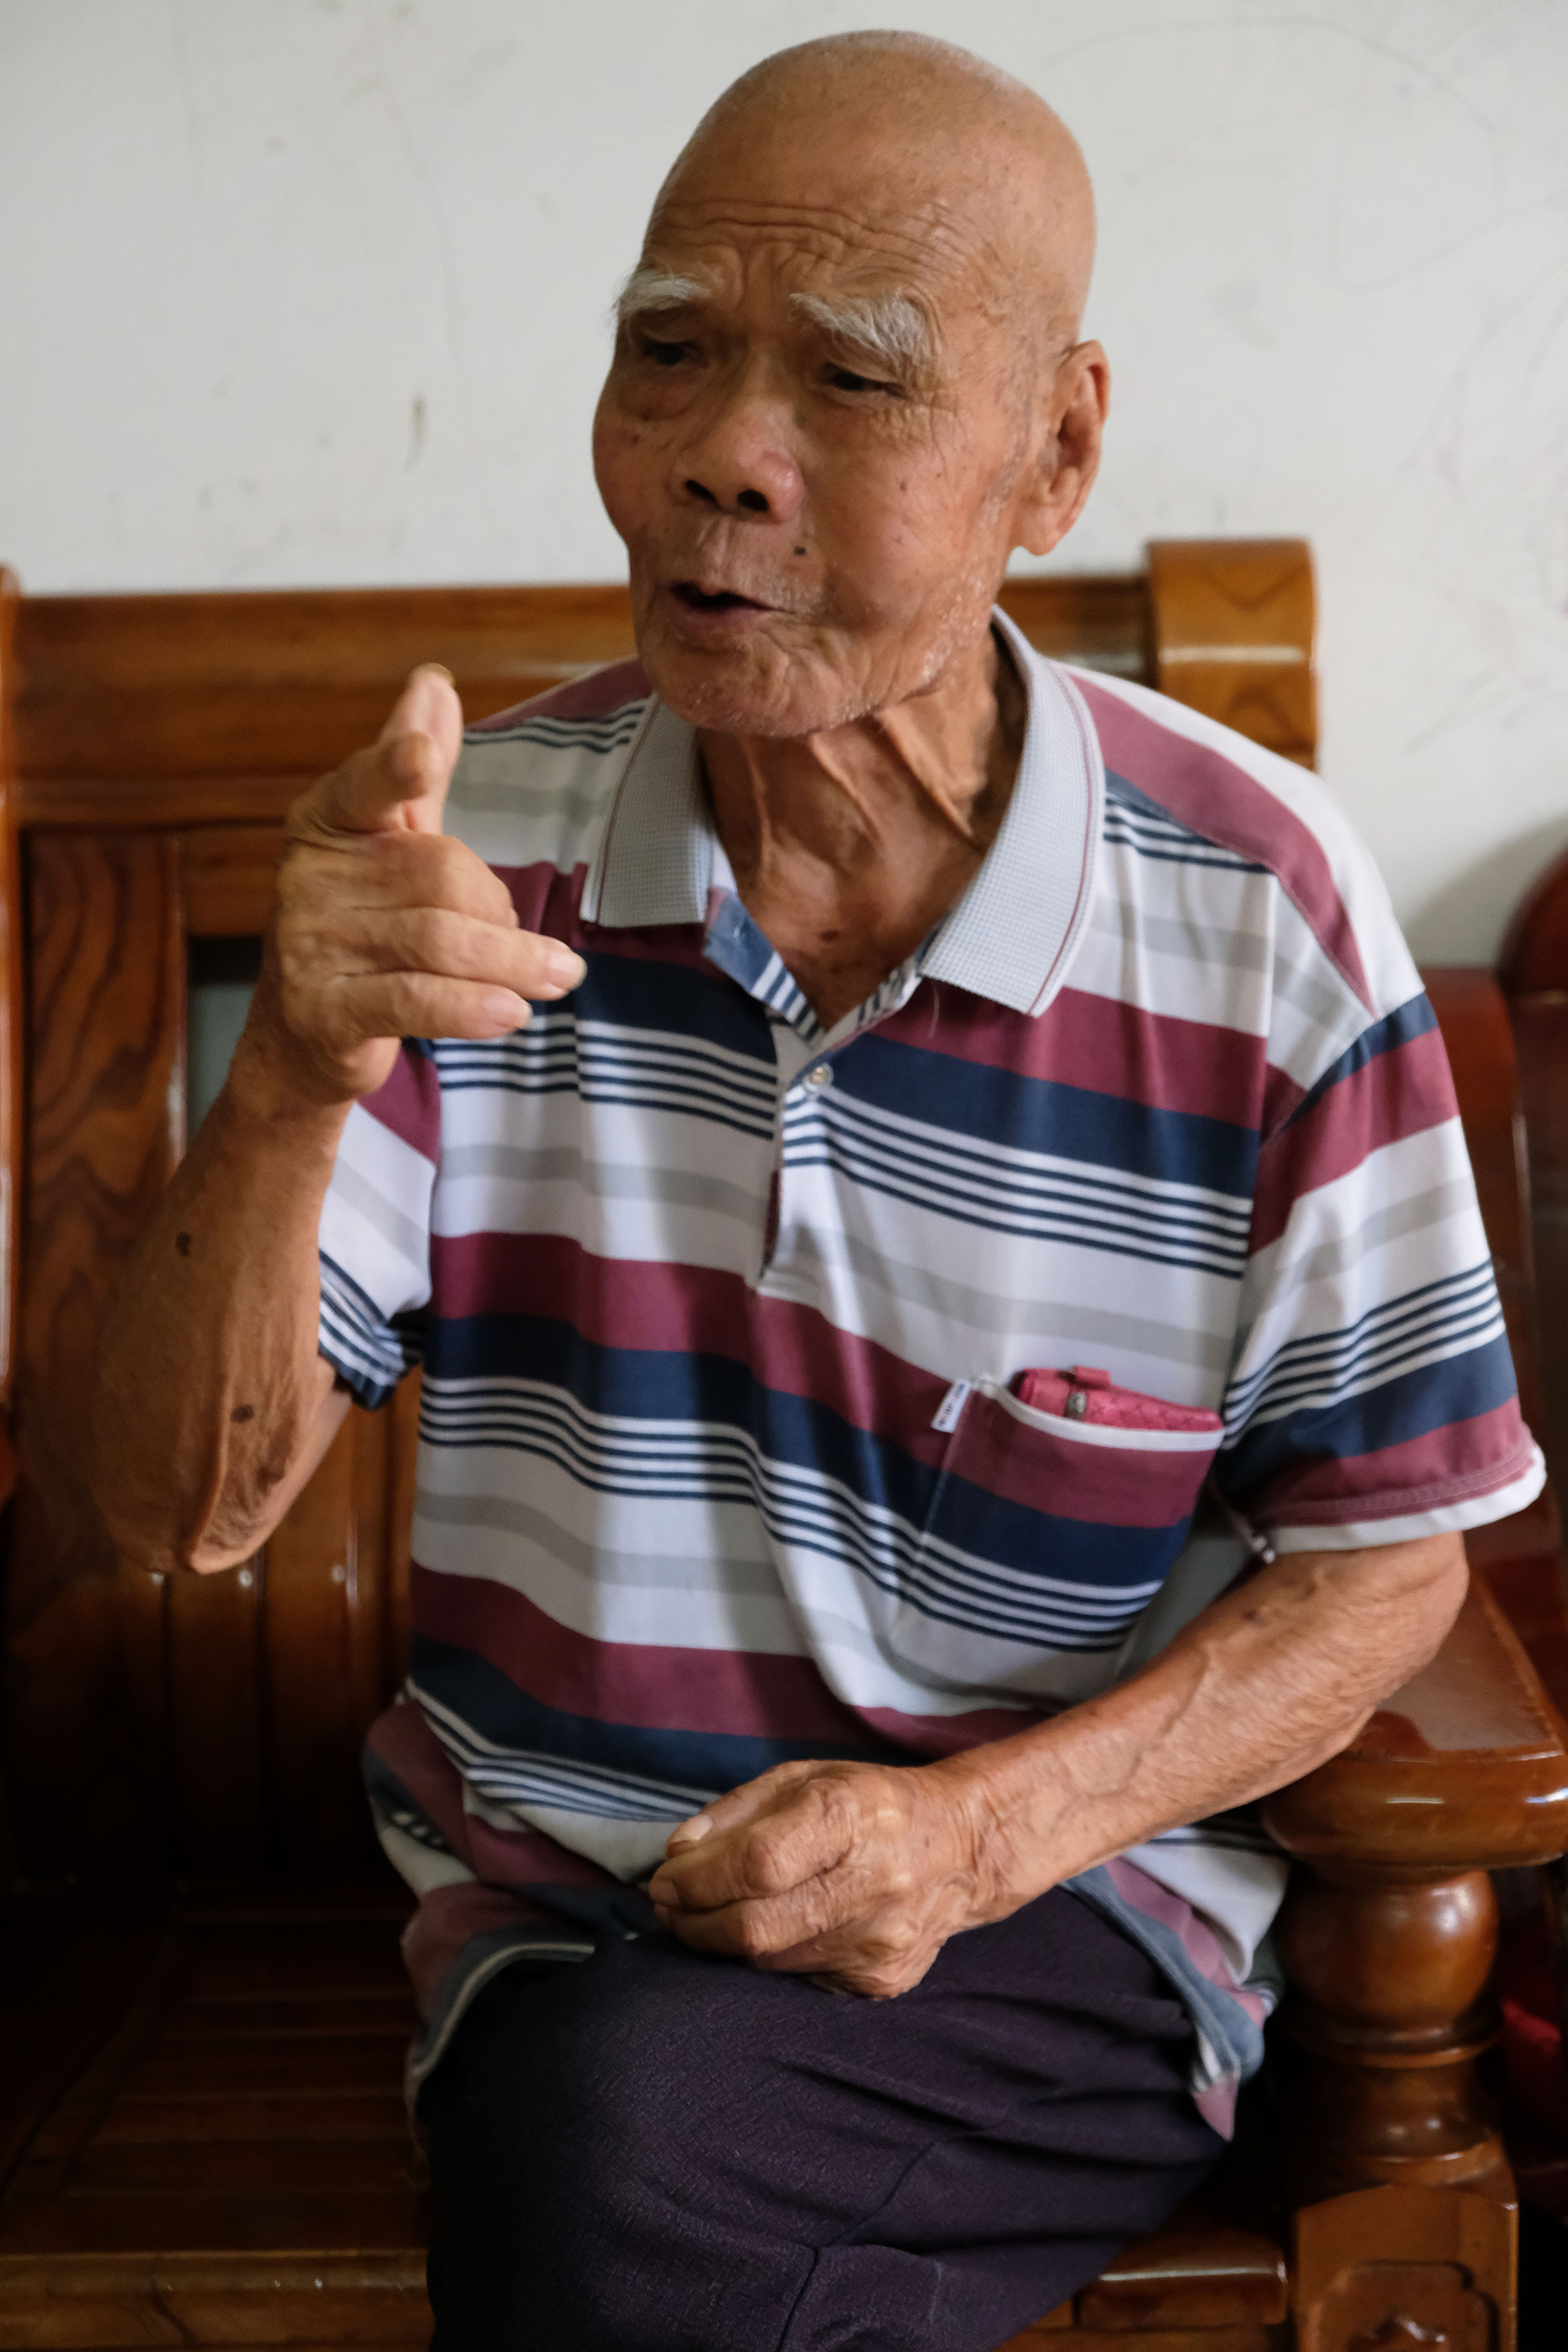 107岁的陈爷爷胃口好力气大,肩扛满满一大袋子稻谷气